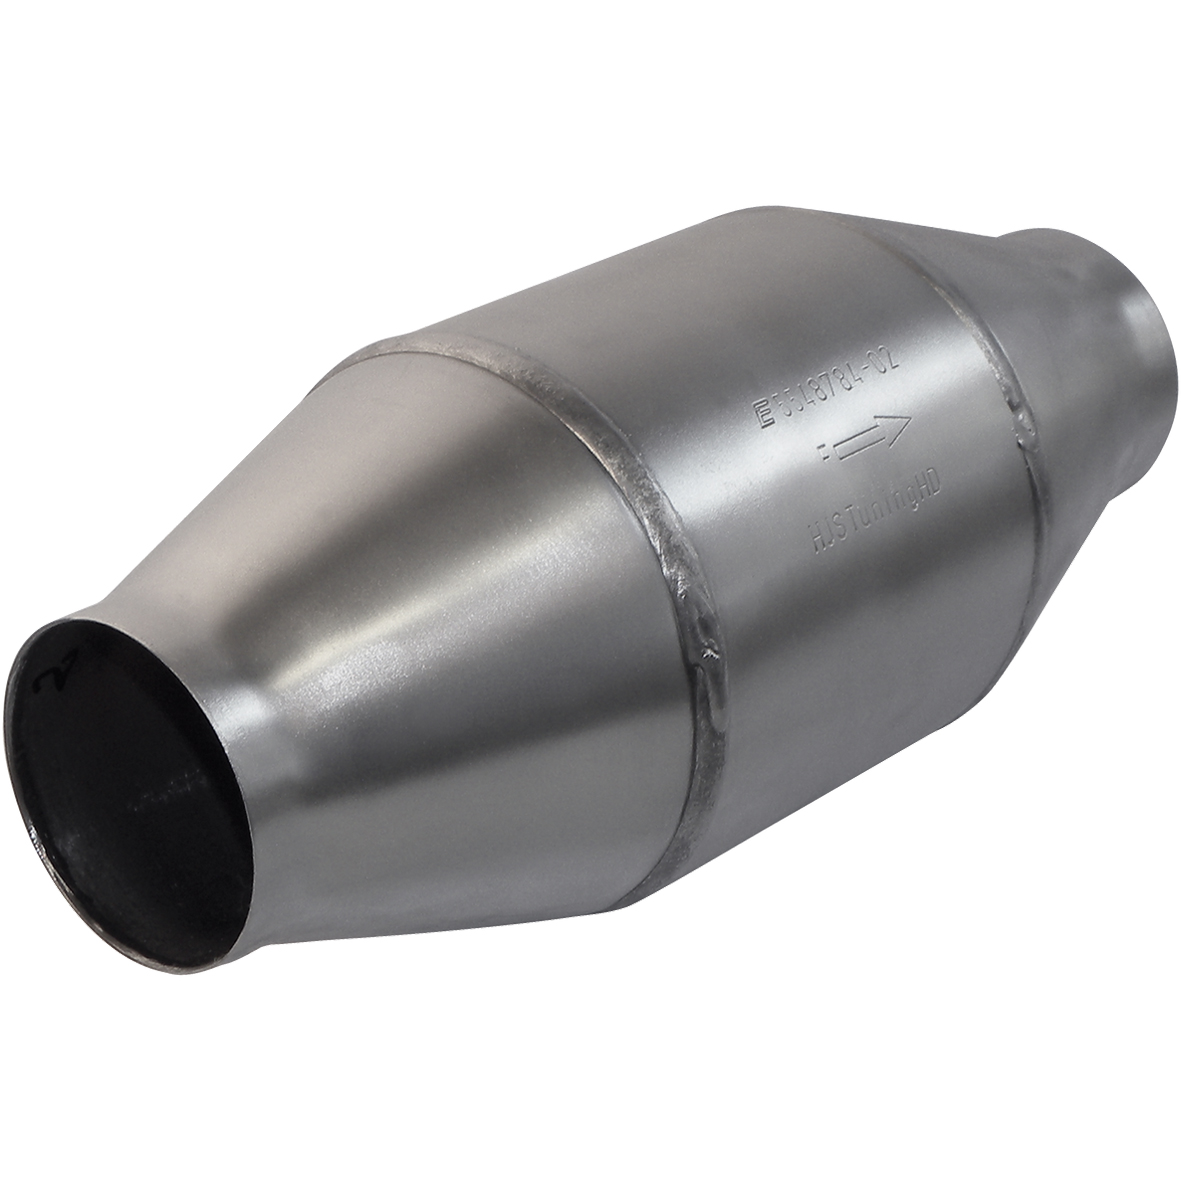 Katalysator 130 mm Durchmesser, 312 mm lang, 70,5 mm Klinke (HD) – RPower